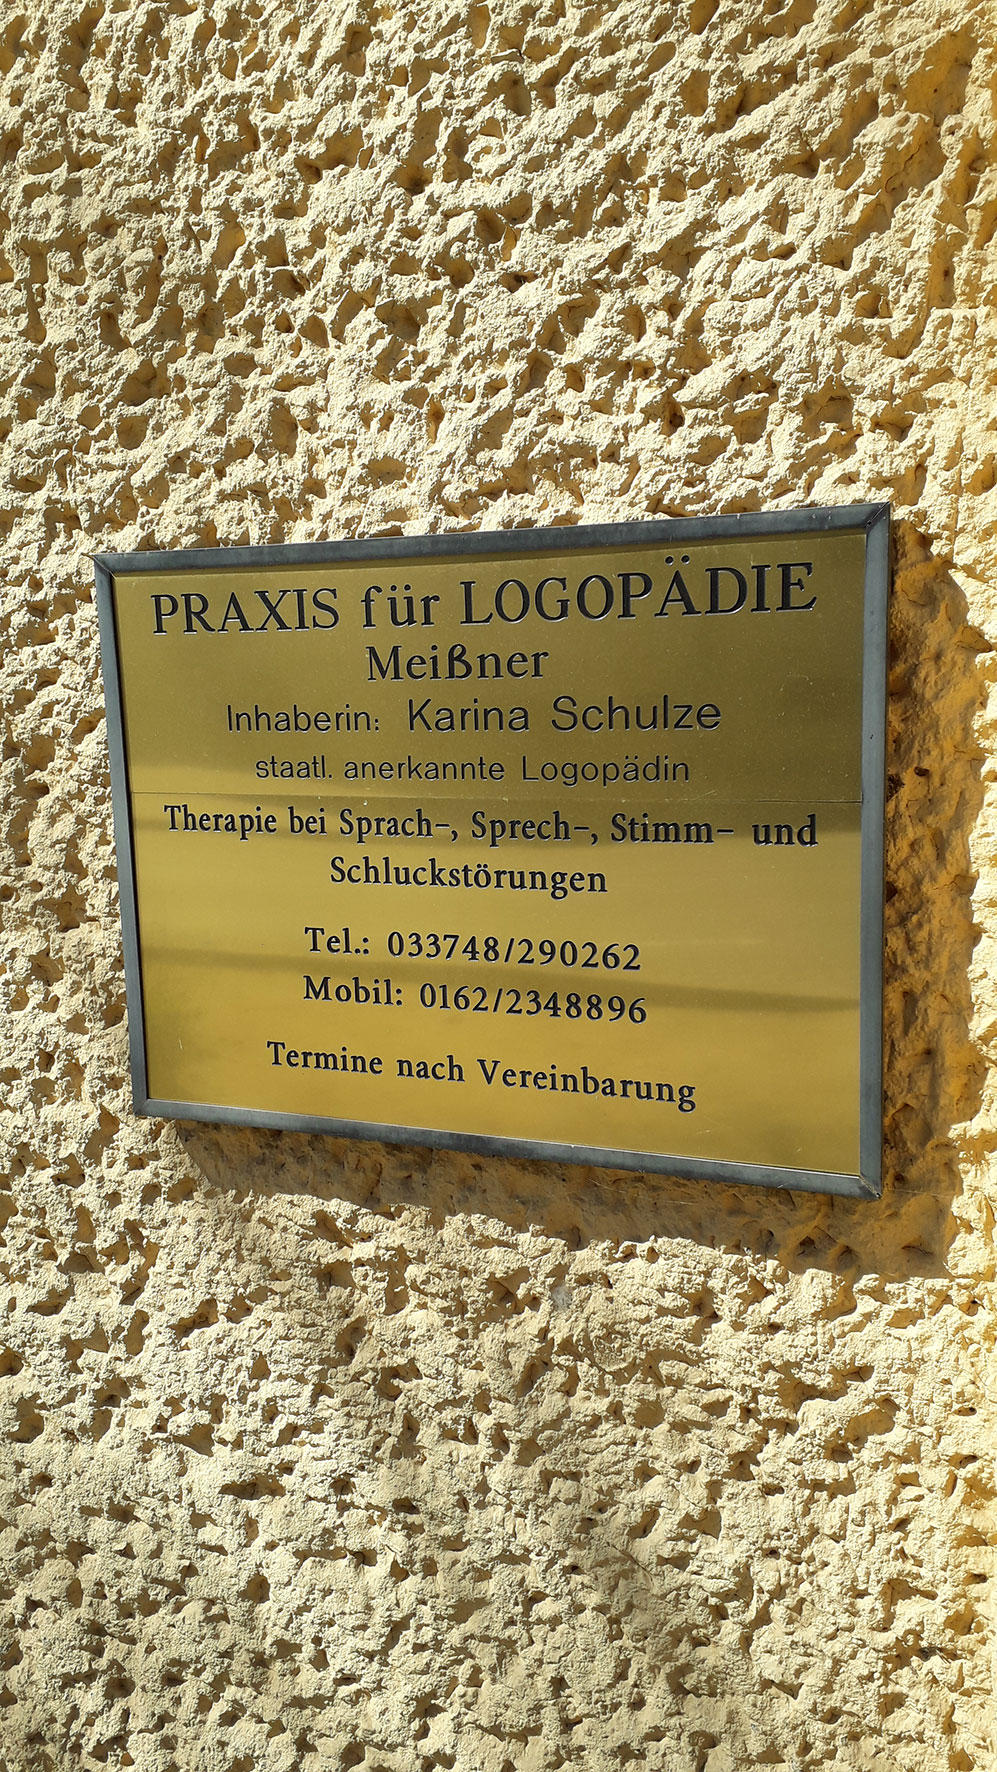 Praxis für Logopädie Meißner Inh. Karina Schulze, Großstraße 19 in Treuenbrietzen